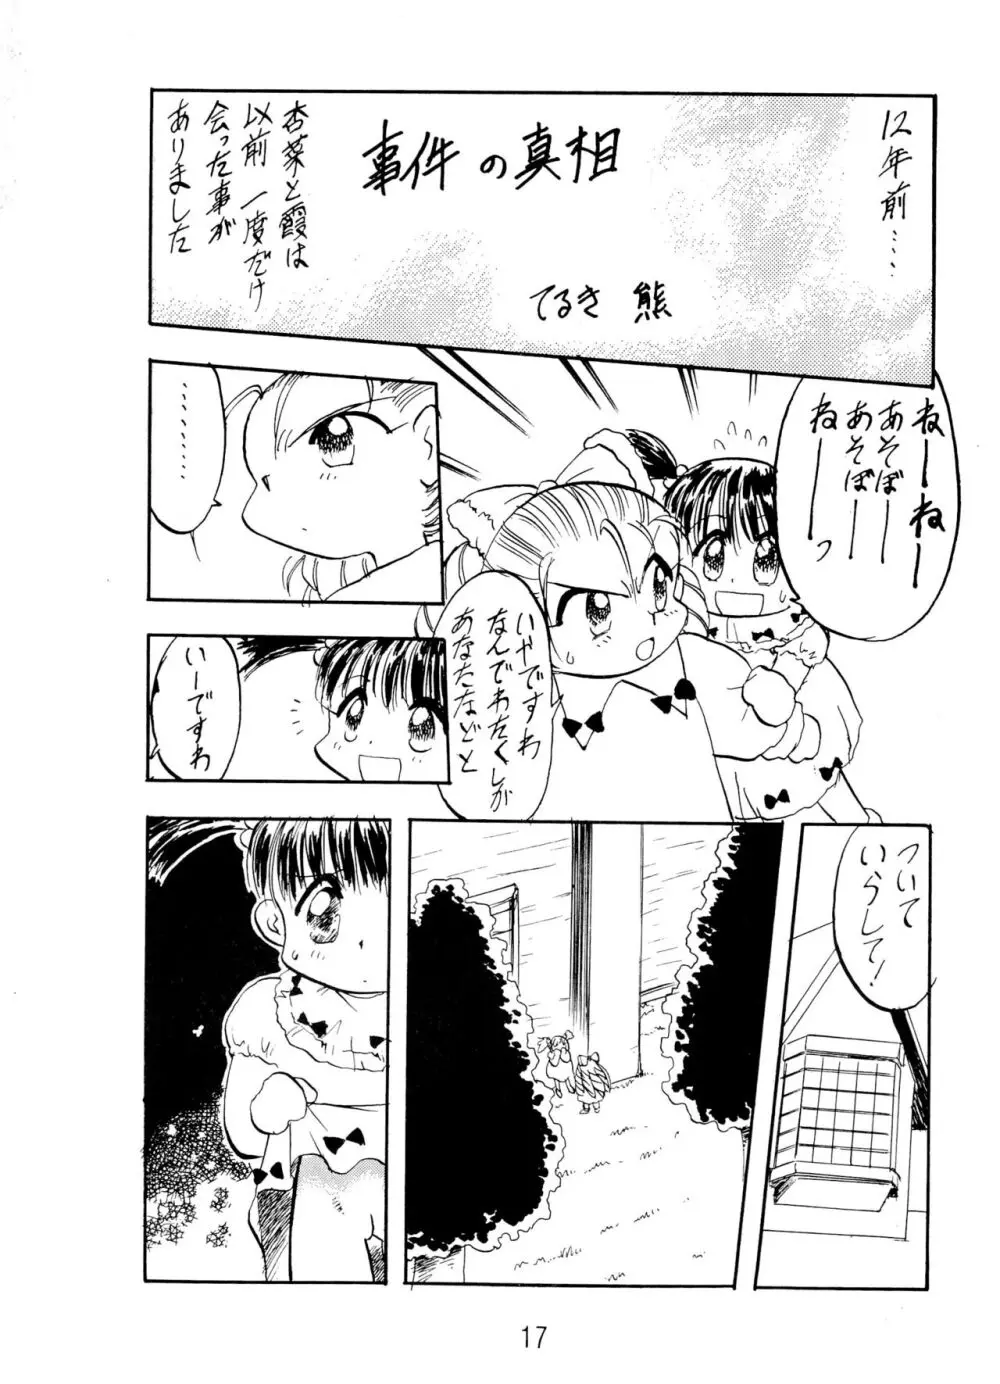 ANNA あ・ん・な・・・ - page17